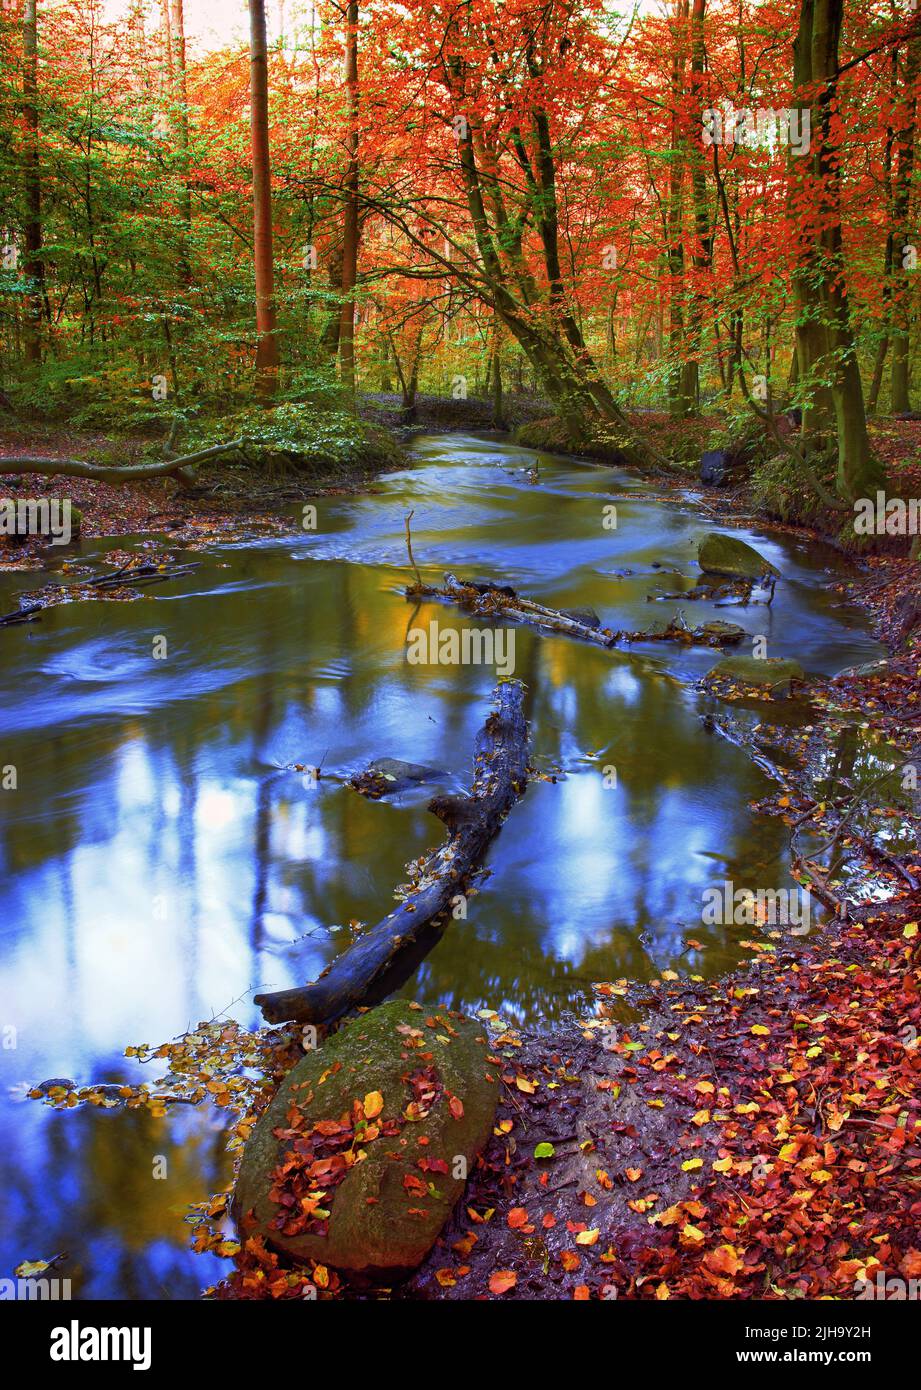 Hermoso y vibrante bosque de otoño y un arroyo que fluye a través de él. El paisaje de un río en los bosques al aire libre en la naturaleza cerca de árboles altos con Foto de stock